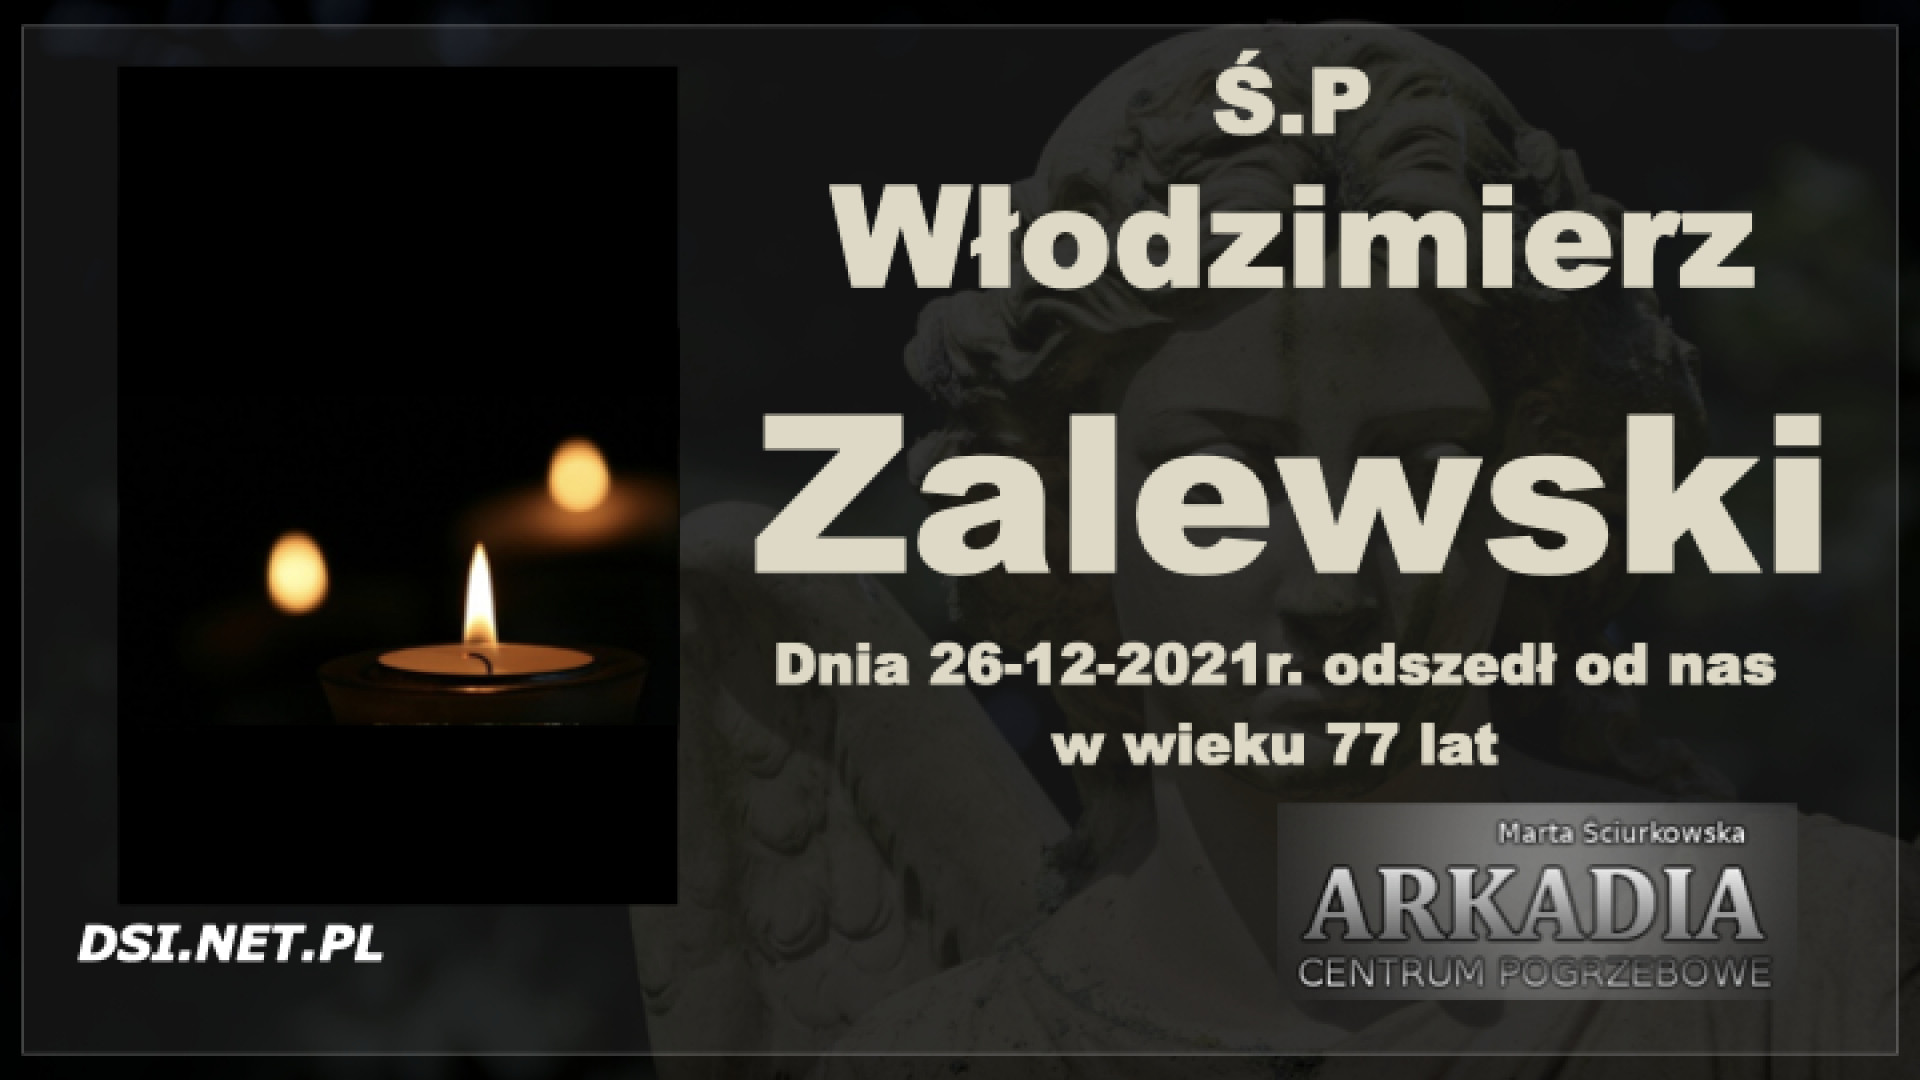 Ś.P. Włodzimierz Zalewski